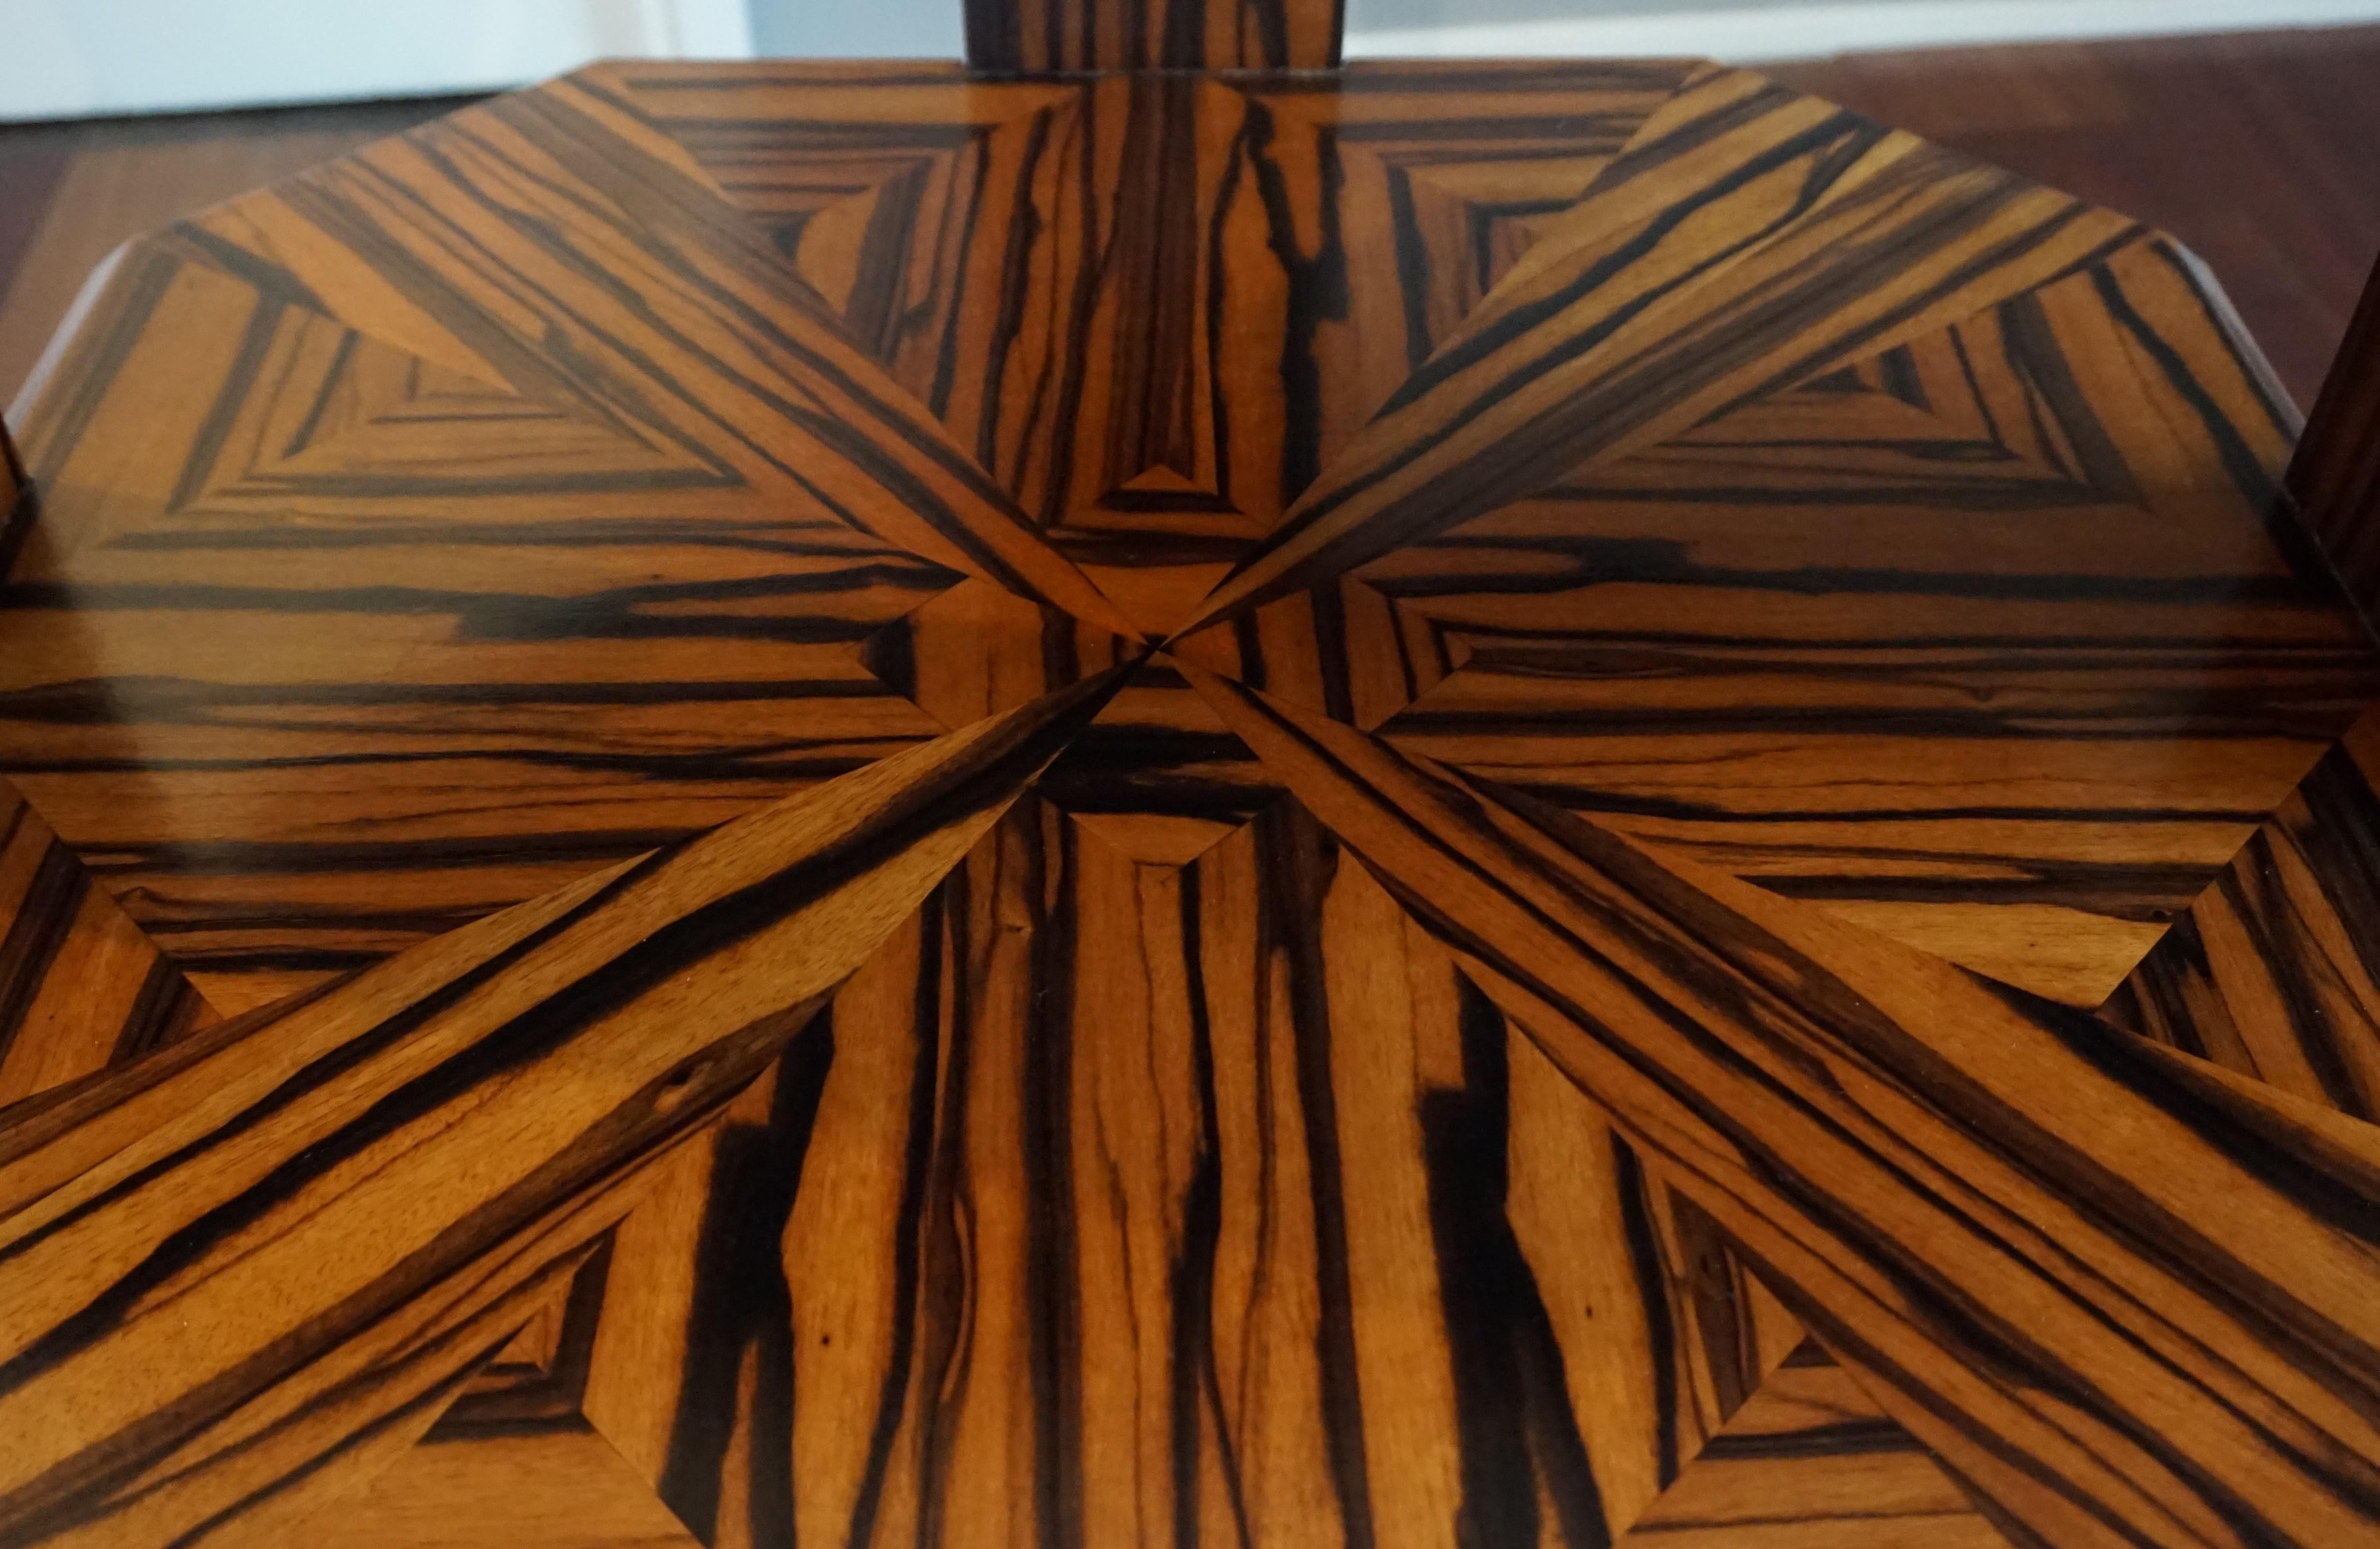 Unique Coromandel Art Deco Étagère Table with Stunning Inlaid Geometric Patterns 2